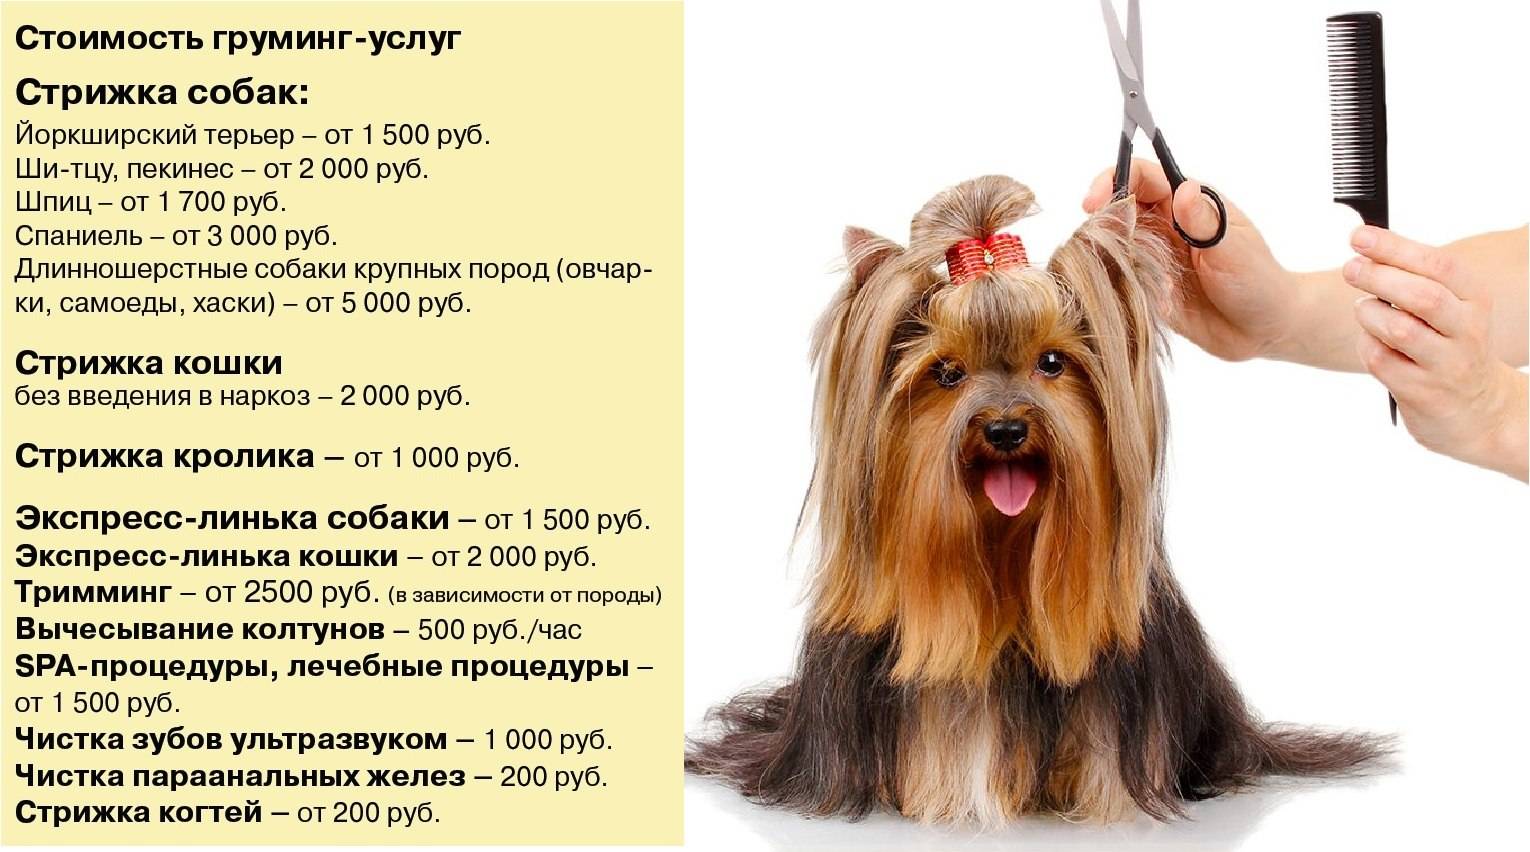 Груминг собак: что это такое, каких видов он бывает, каким породам собак нужен